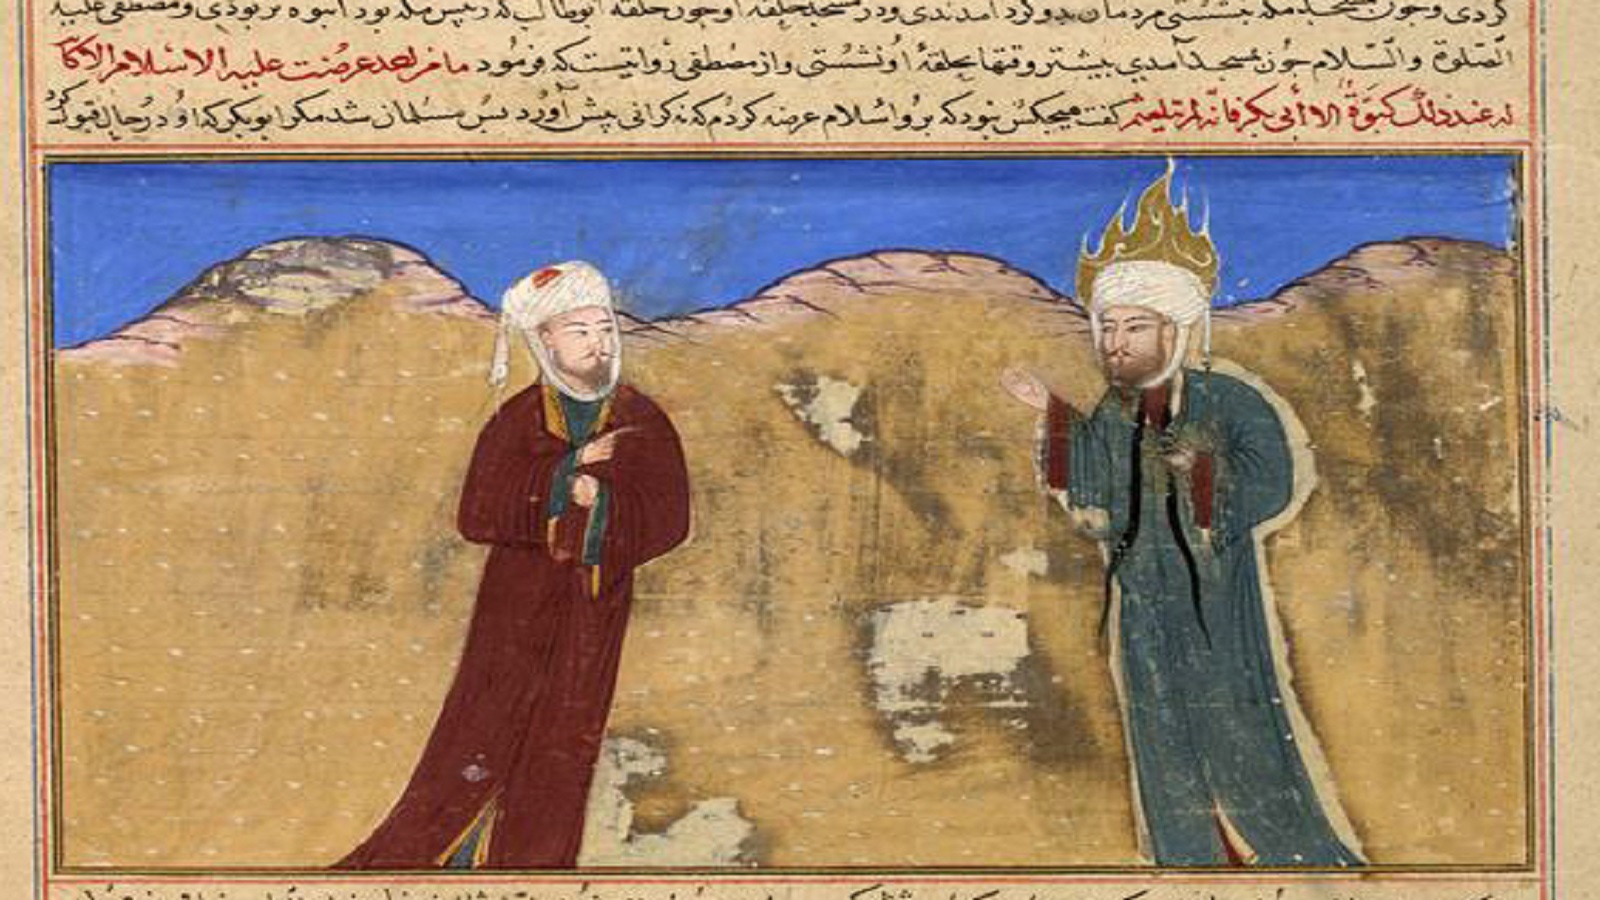 النبي وأبو بكر الصديق، "مجمع التواريخ"، النصف الأول من القرن الخامس عشر، مكتبة هارفرد.